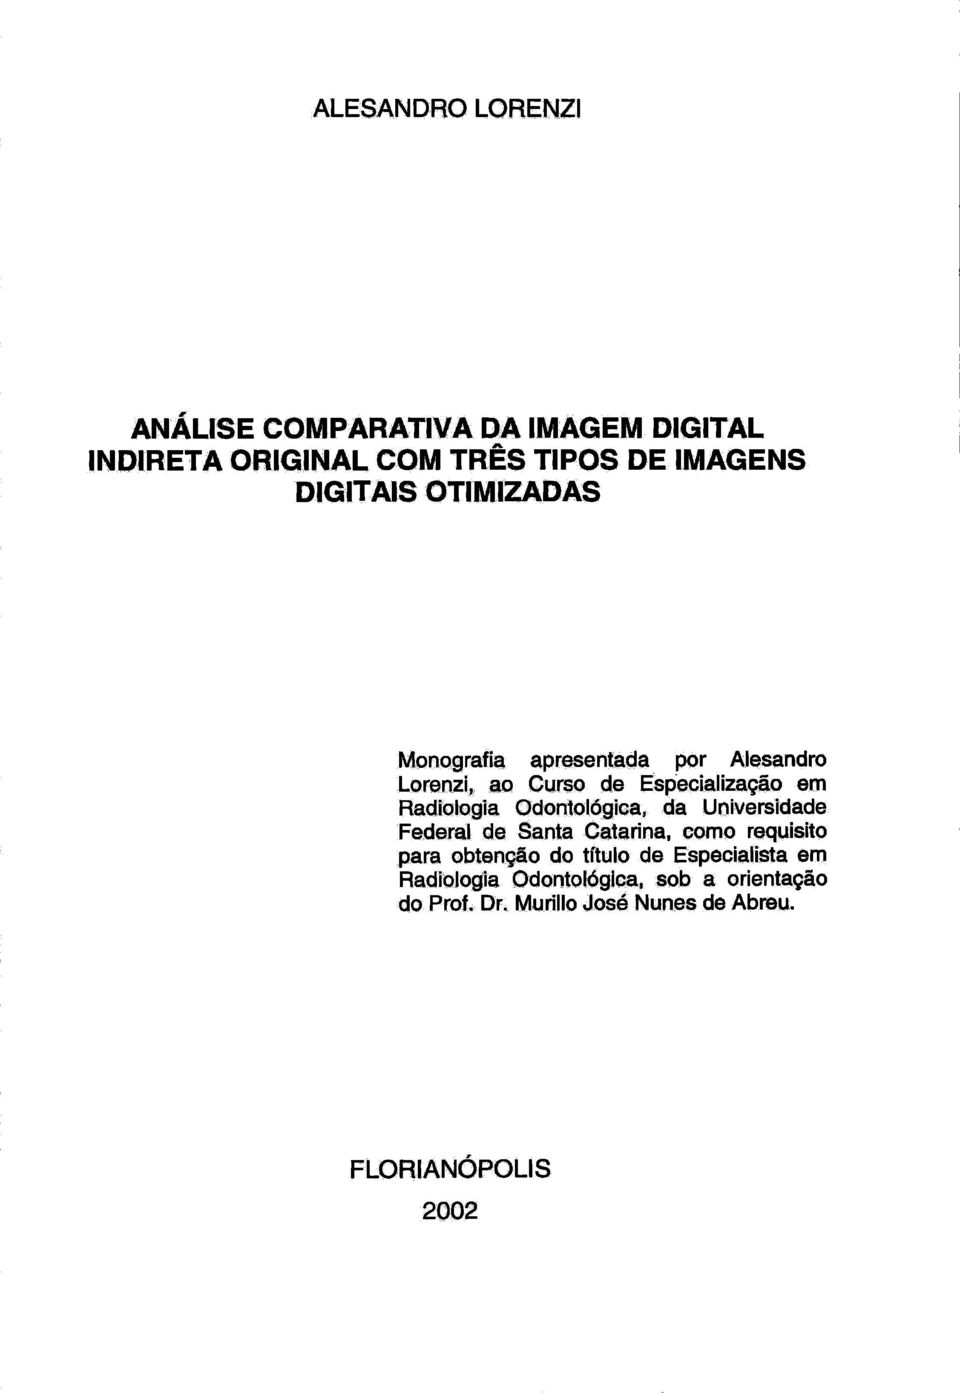 Radiologia Odontolágica, da Universidade Federal de Santa Catarina, como requisito para obtenção do